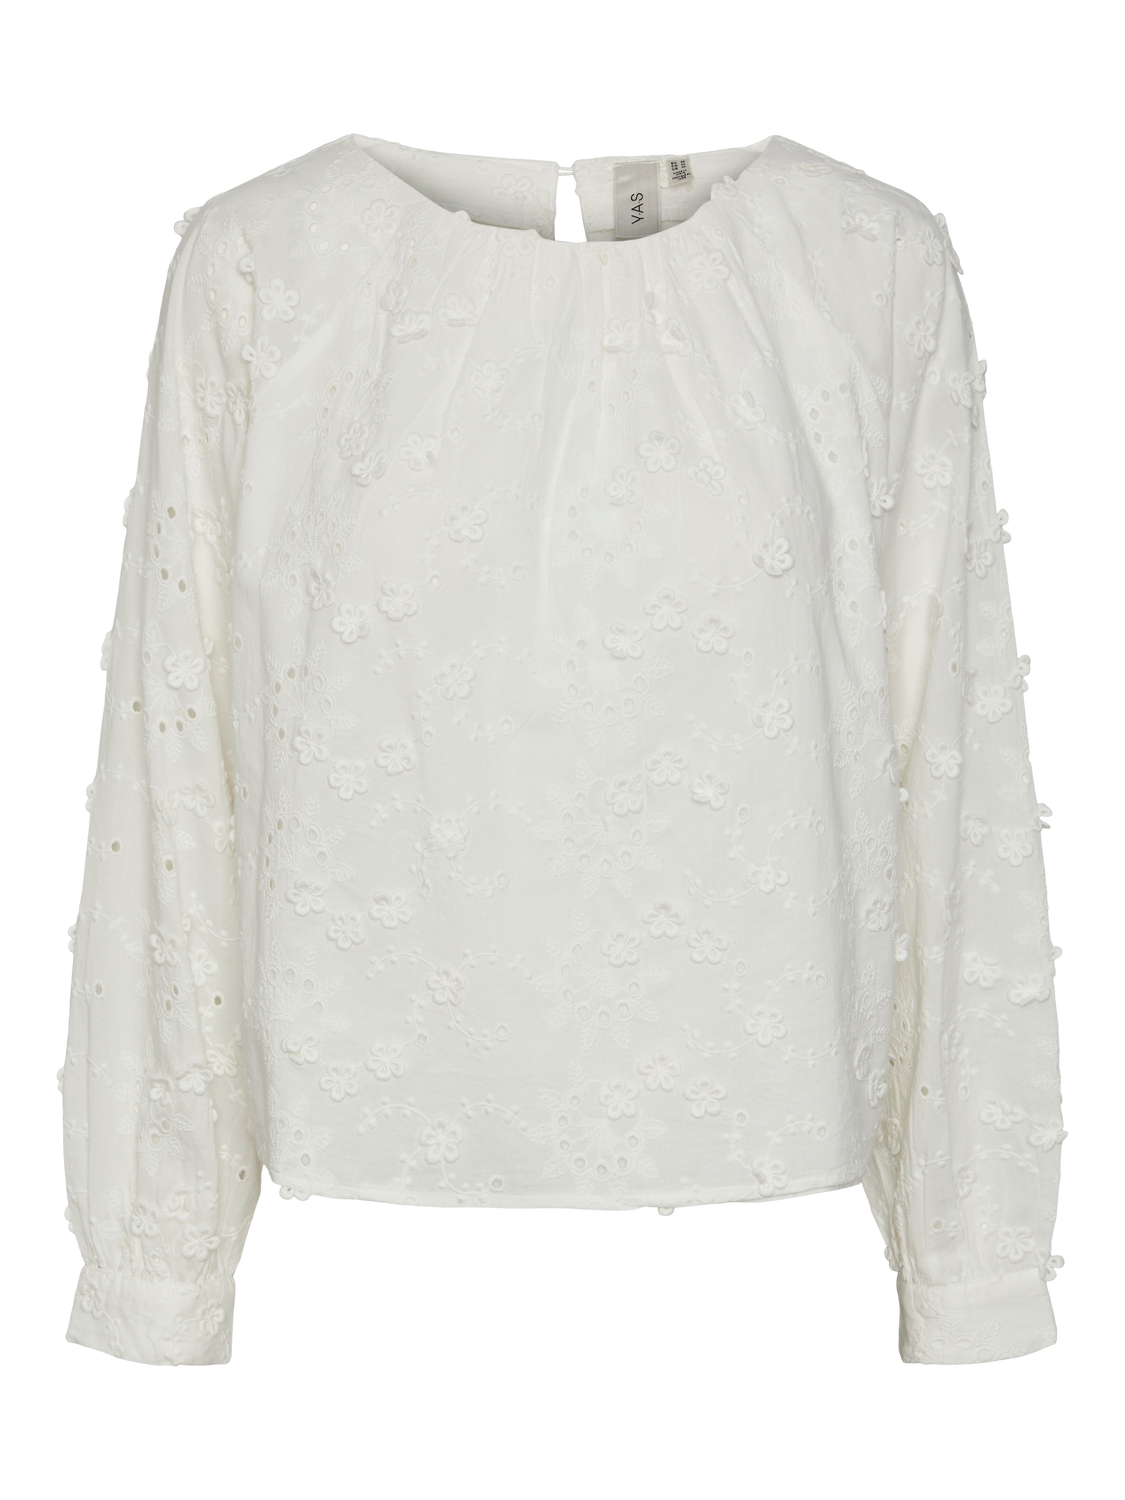 YASMENUSA T-Shirts & Tops - Star White